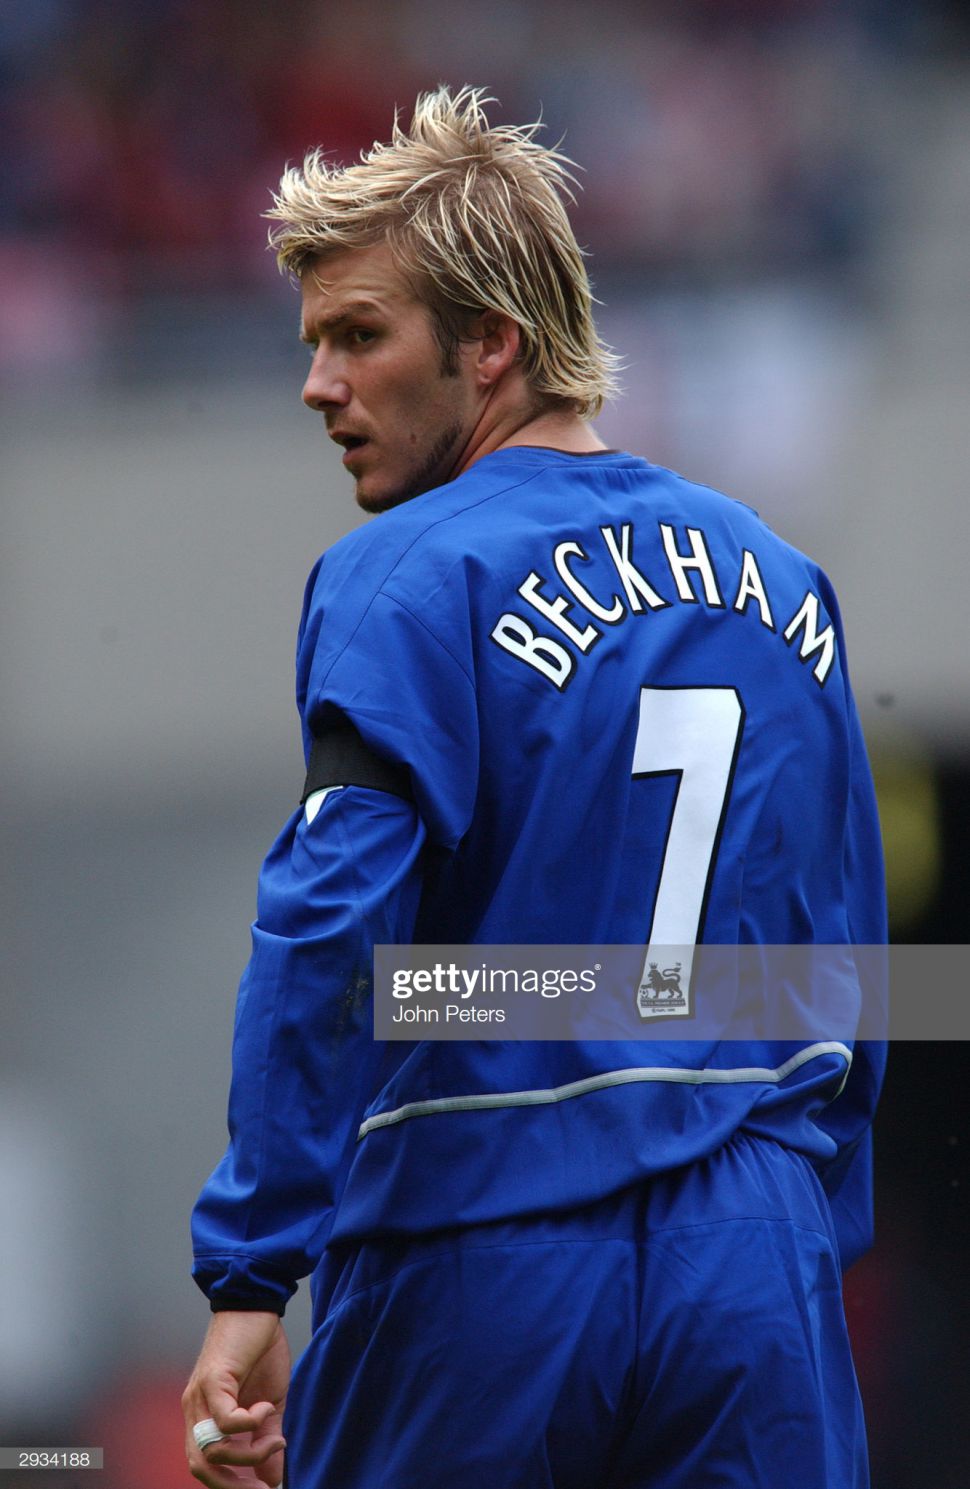 Áo đấu Beckham 7 Manchester United 2002-2003 third shirt jersey blue